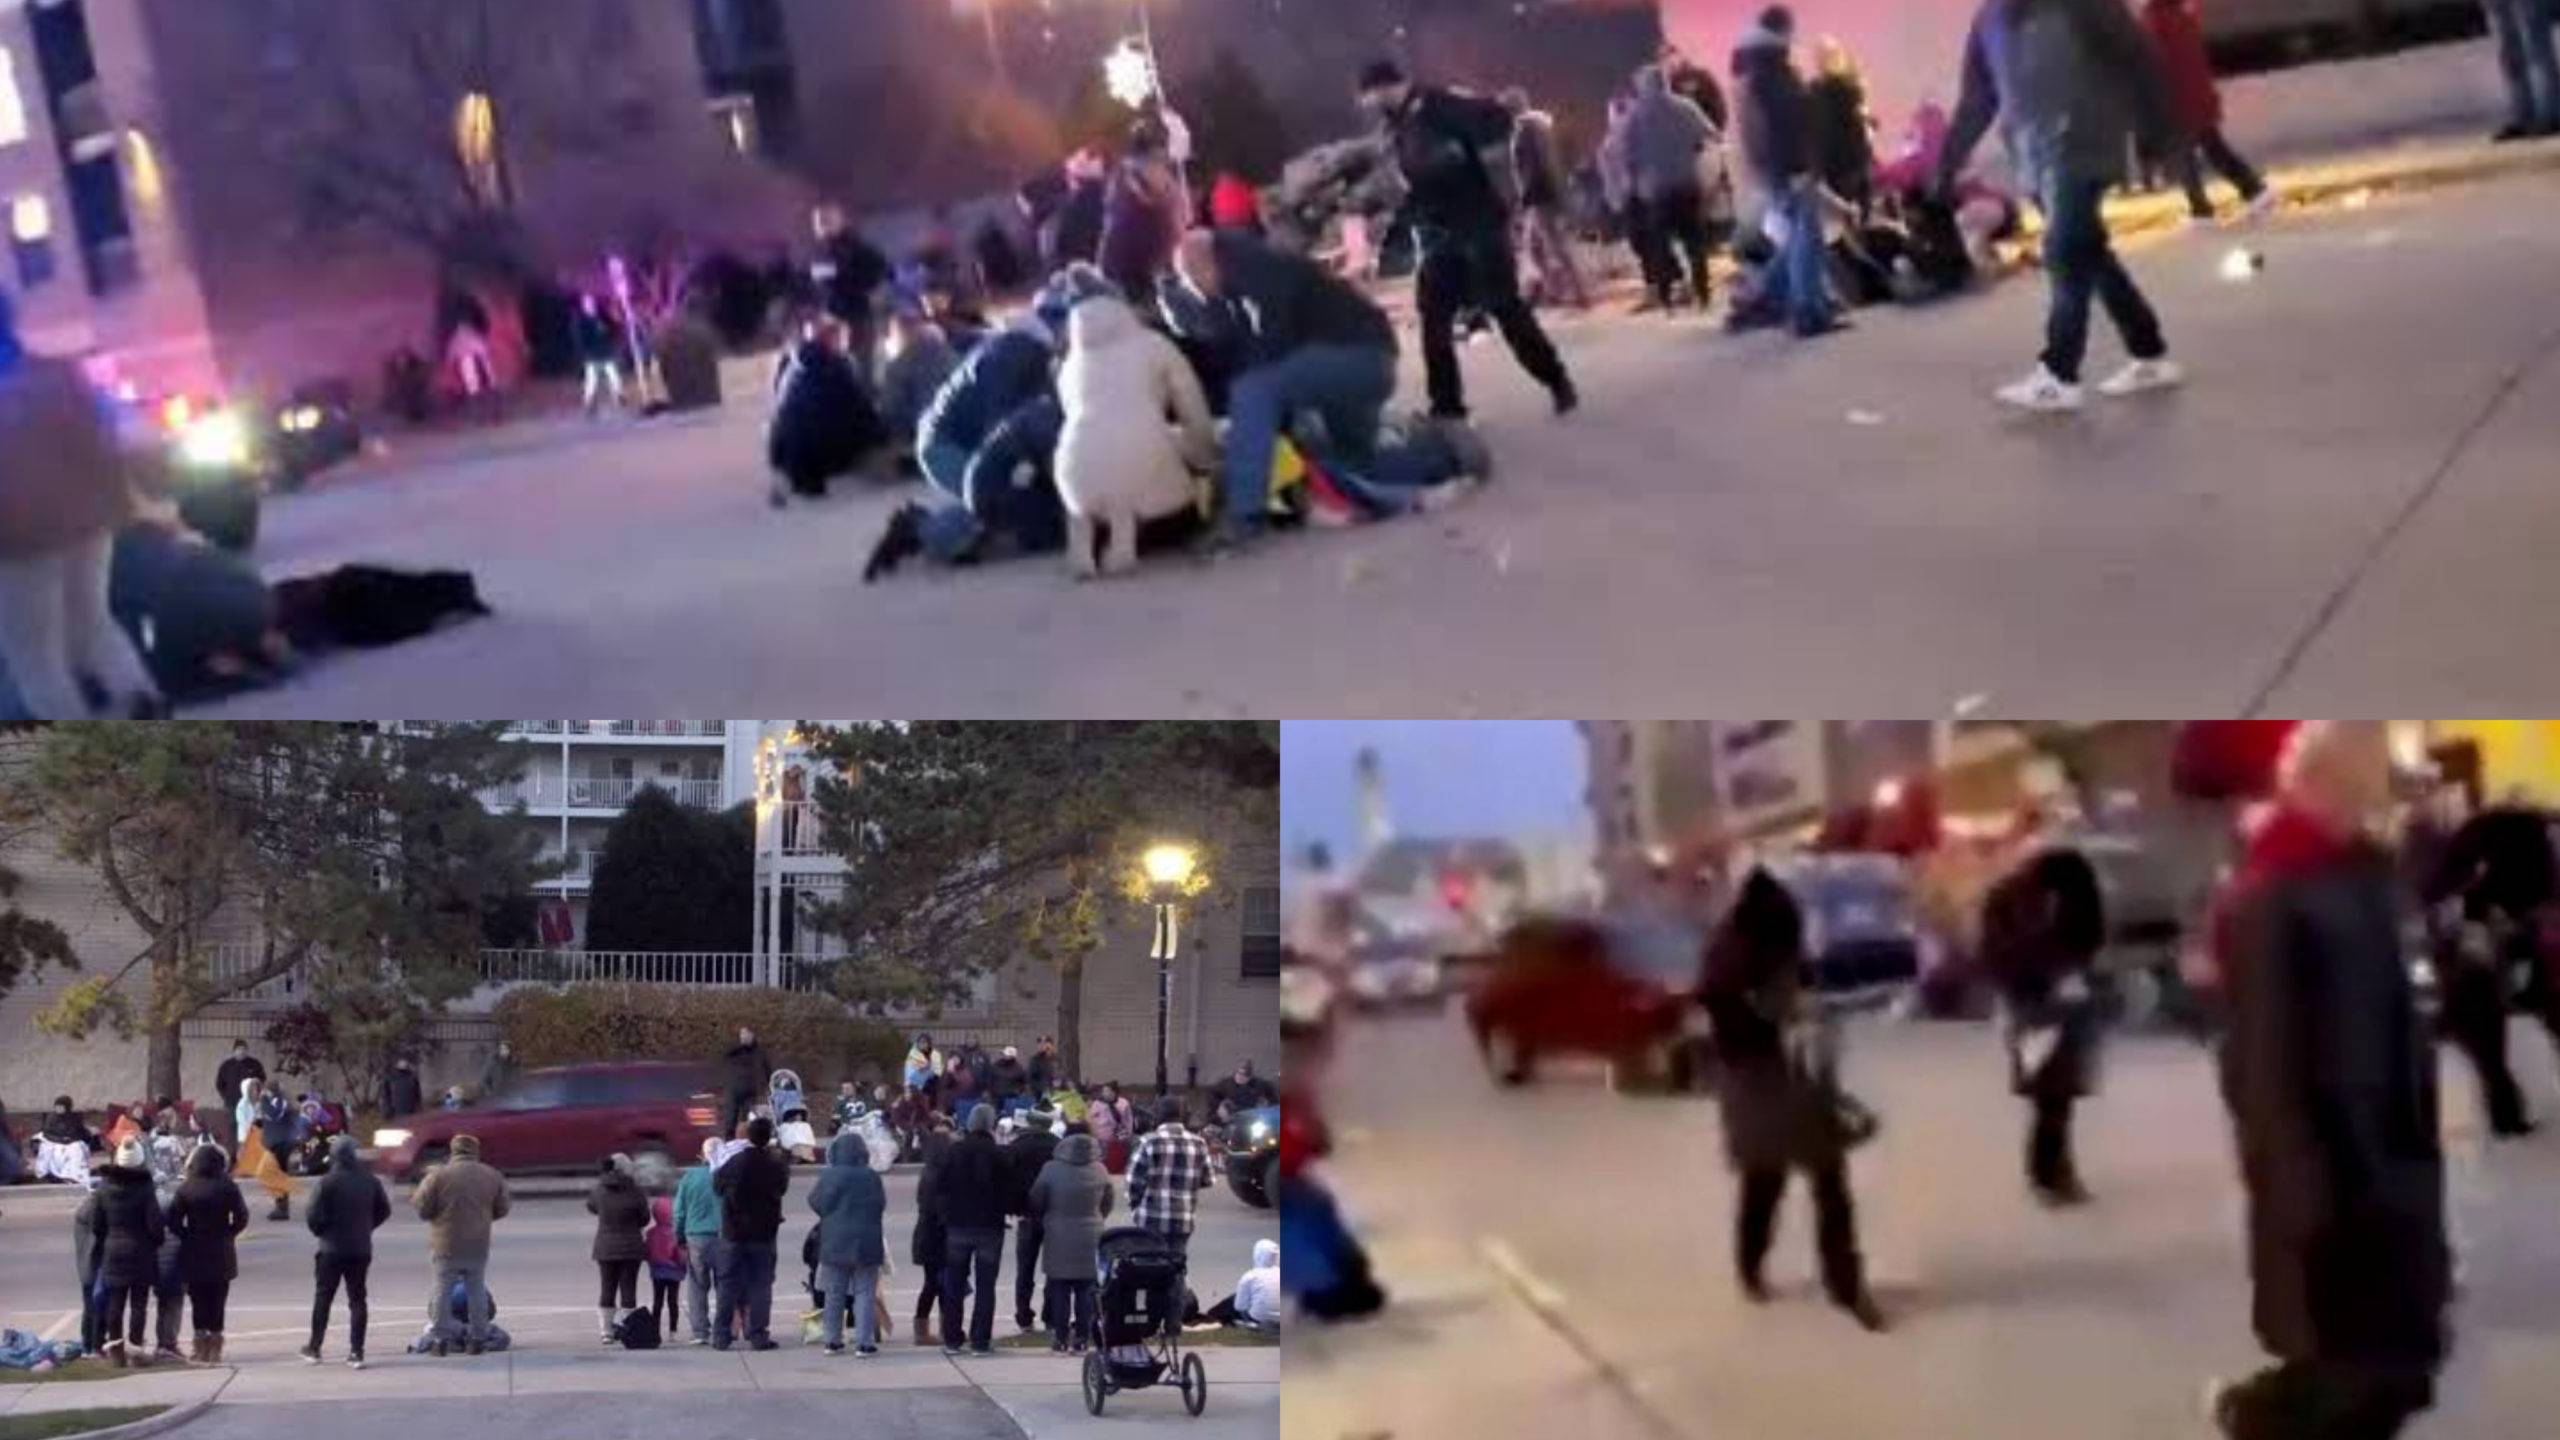 #Video Camioneta atropella a una multitud en desfile navideño en EU, reportan 20 heridos